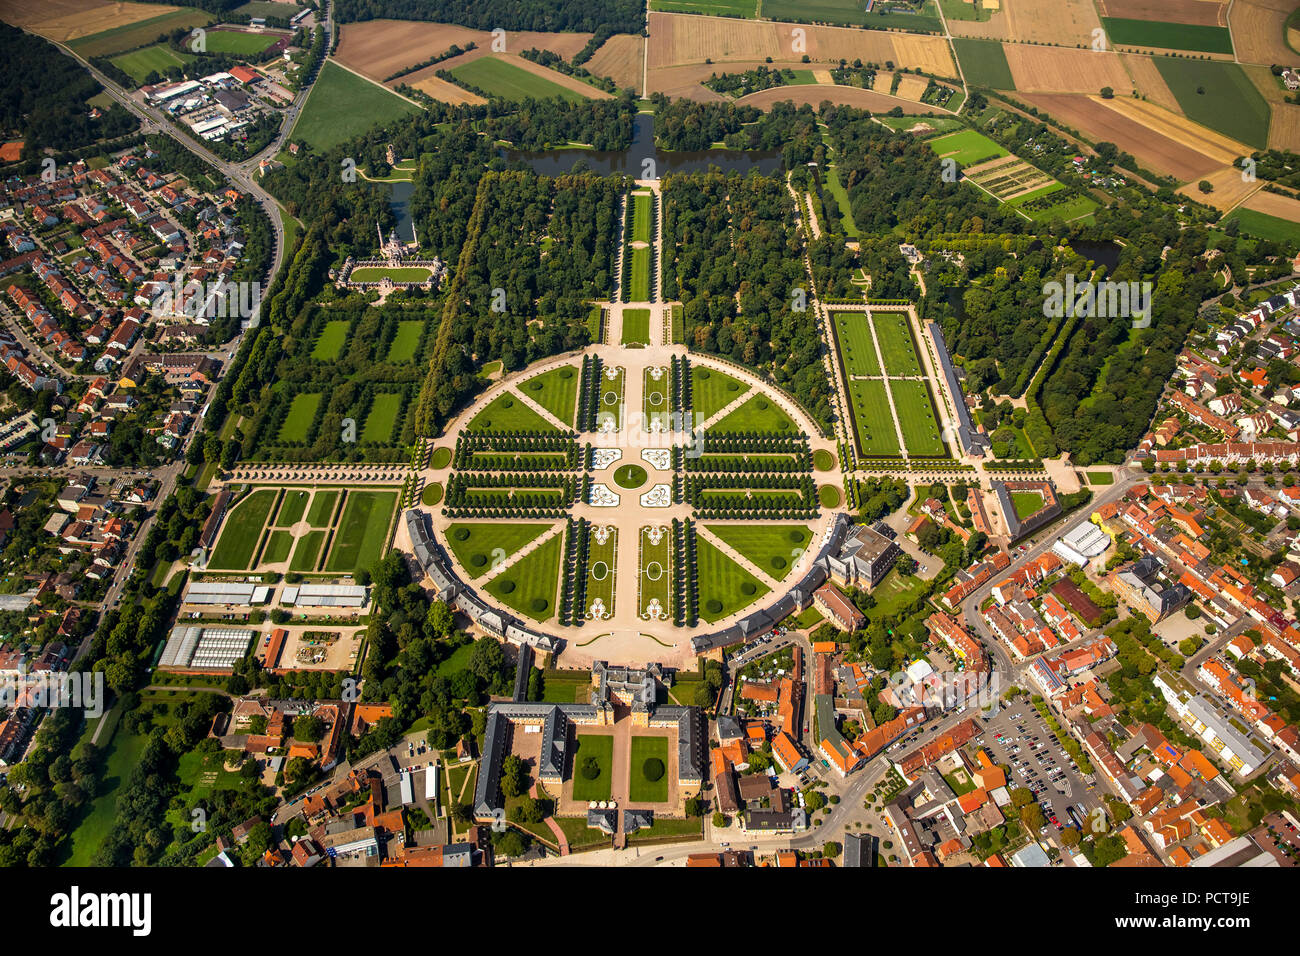 Jardin à la française avec des axes longitudinal et transversal, Schwetzingen Palace Palace avec jardins, Schwetzingen, Bade-Wurtemberg, Allemagne Banque D'Images